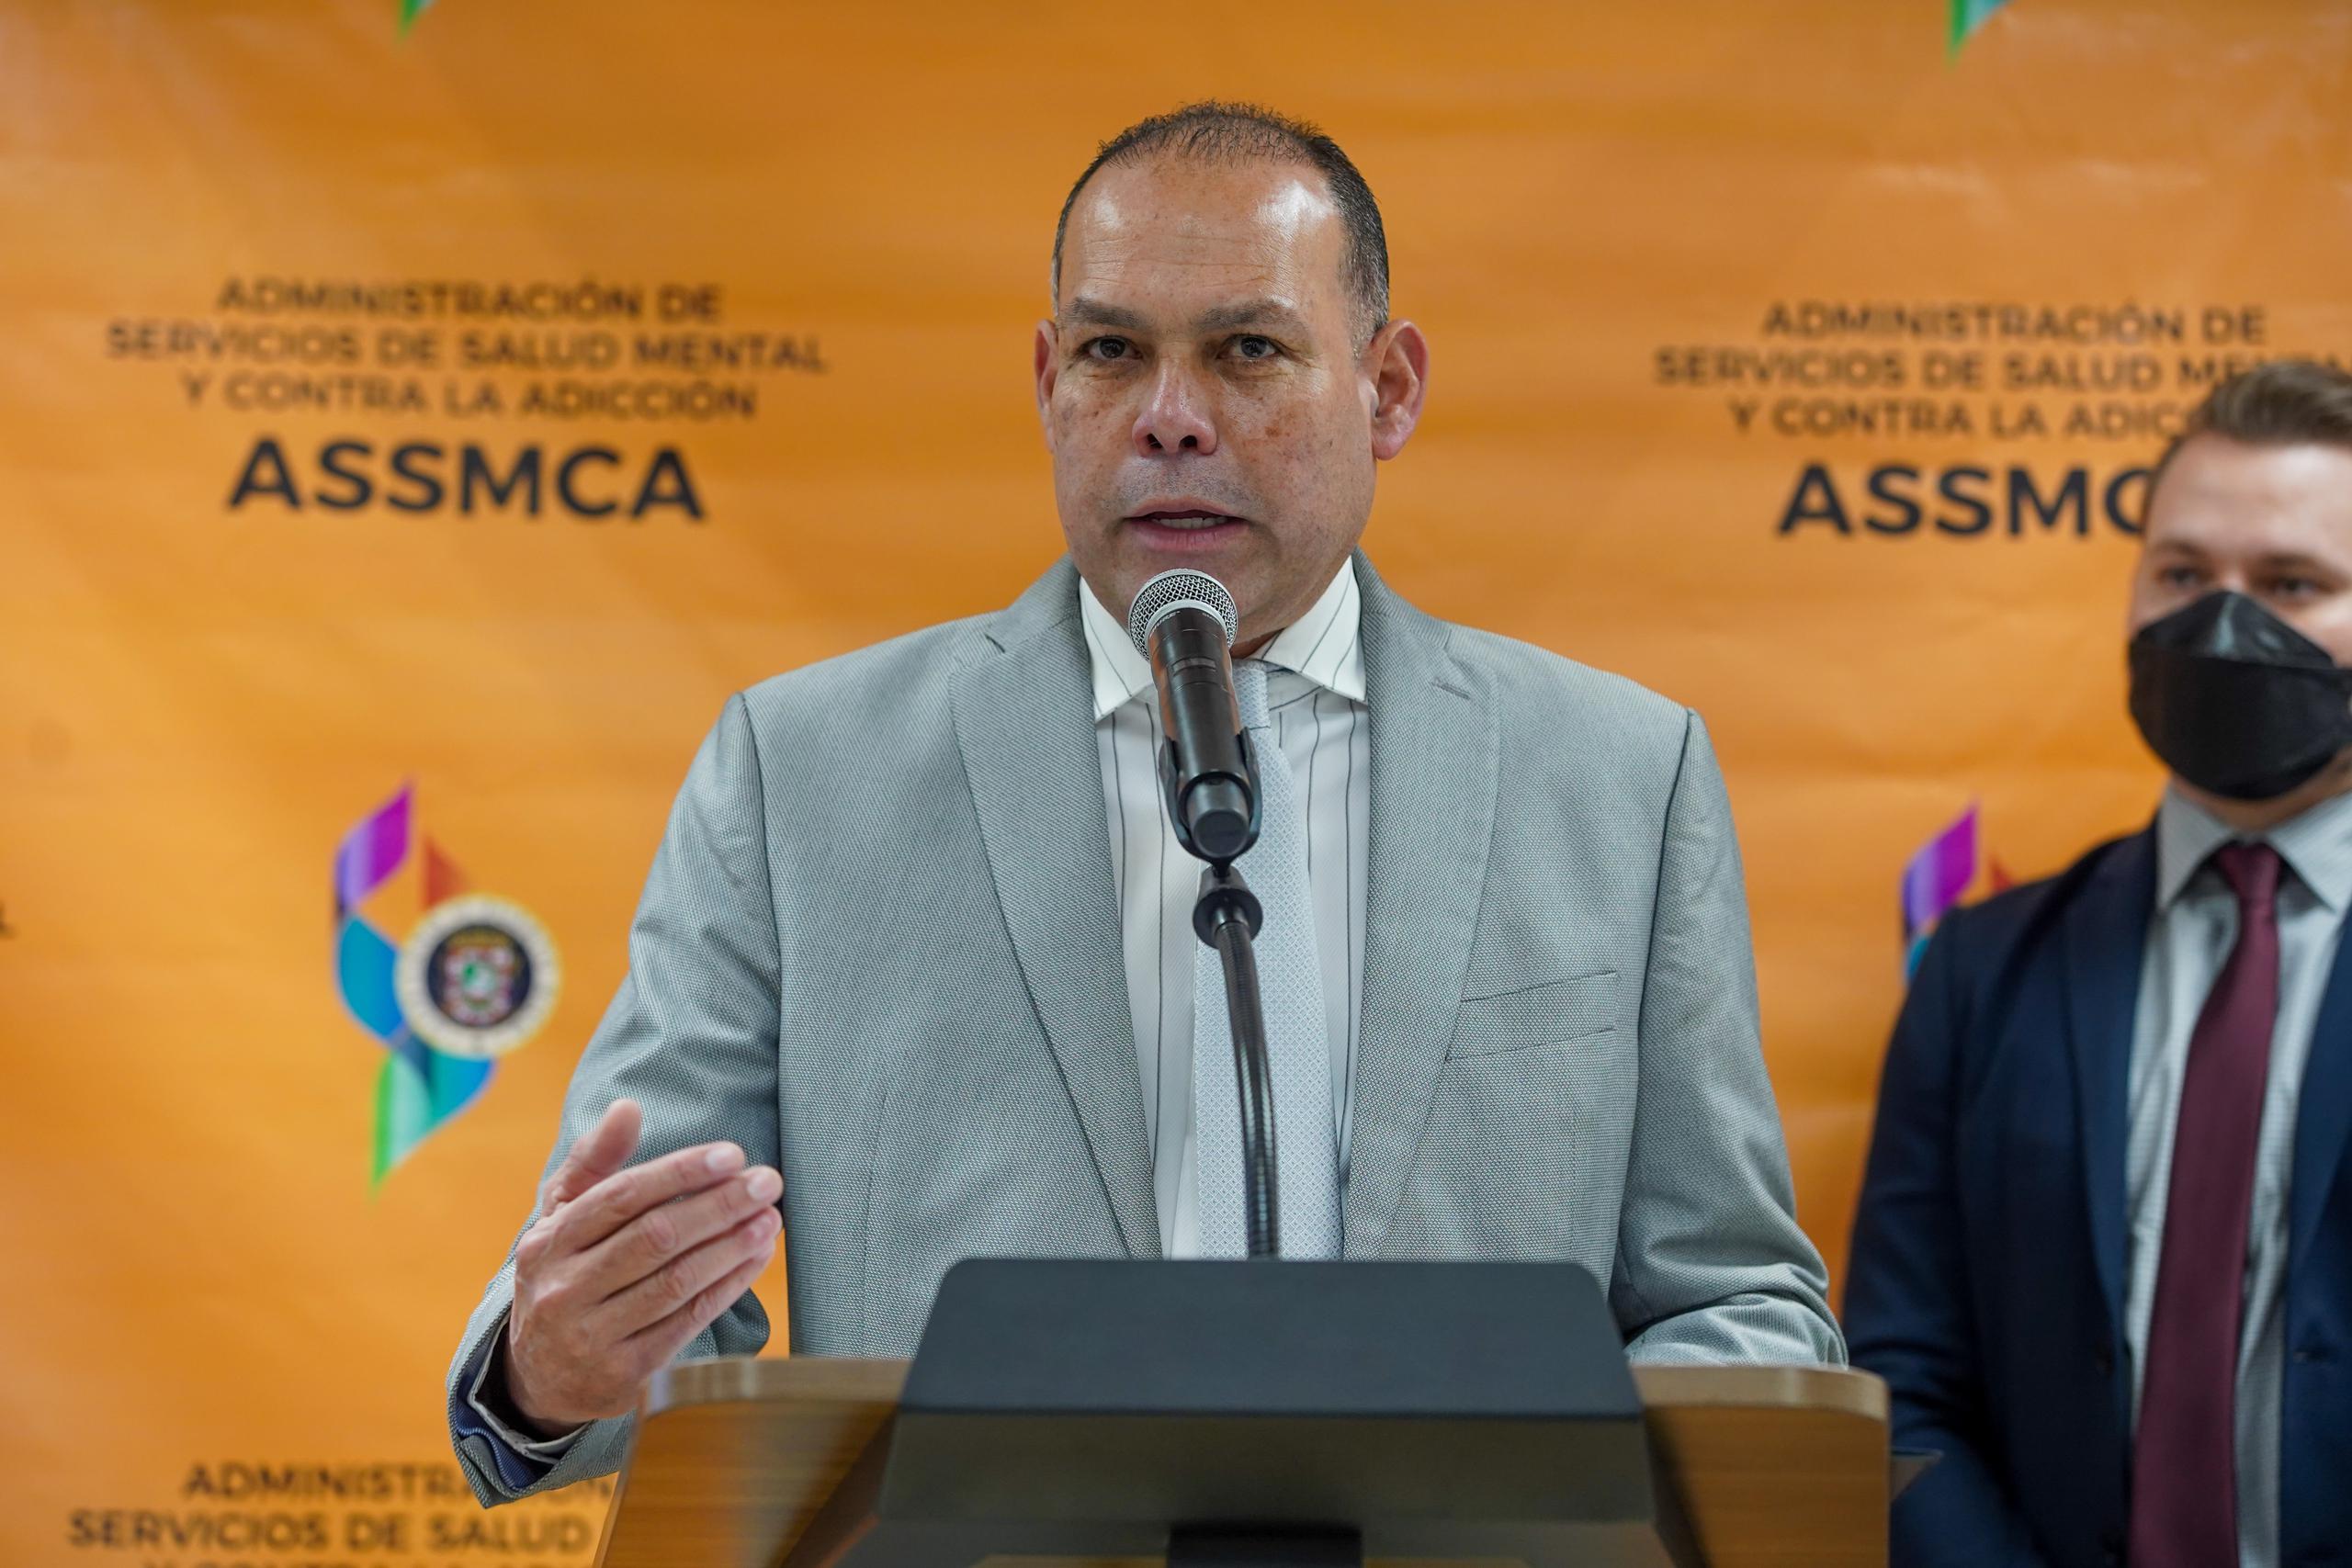 Carlos Rodríguez Mateo, administrador de la Administración de Servicios de Salud Mental y Contra la Adicción (ASSMCA).